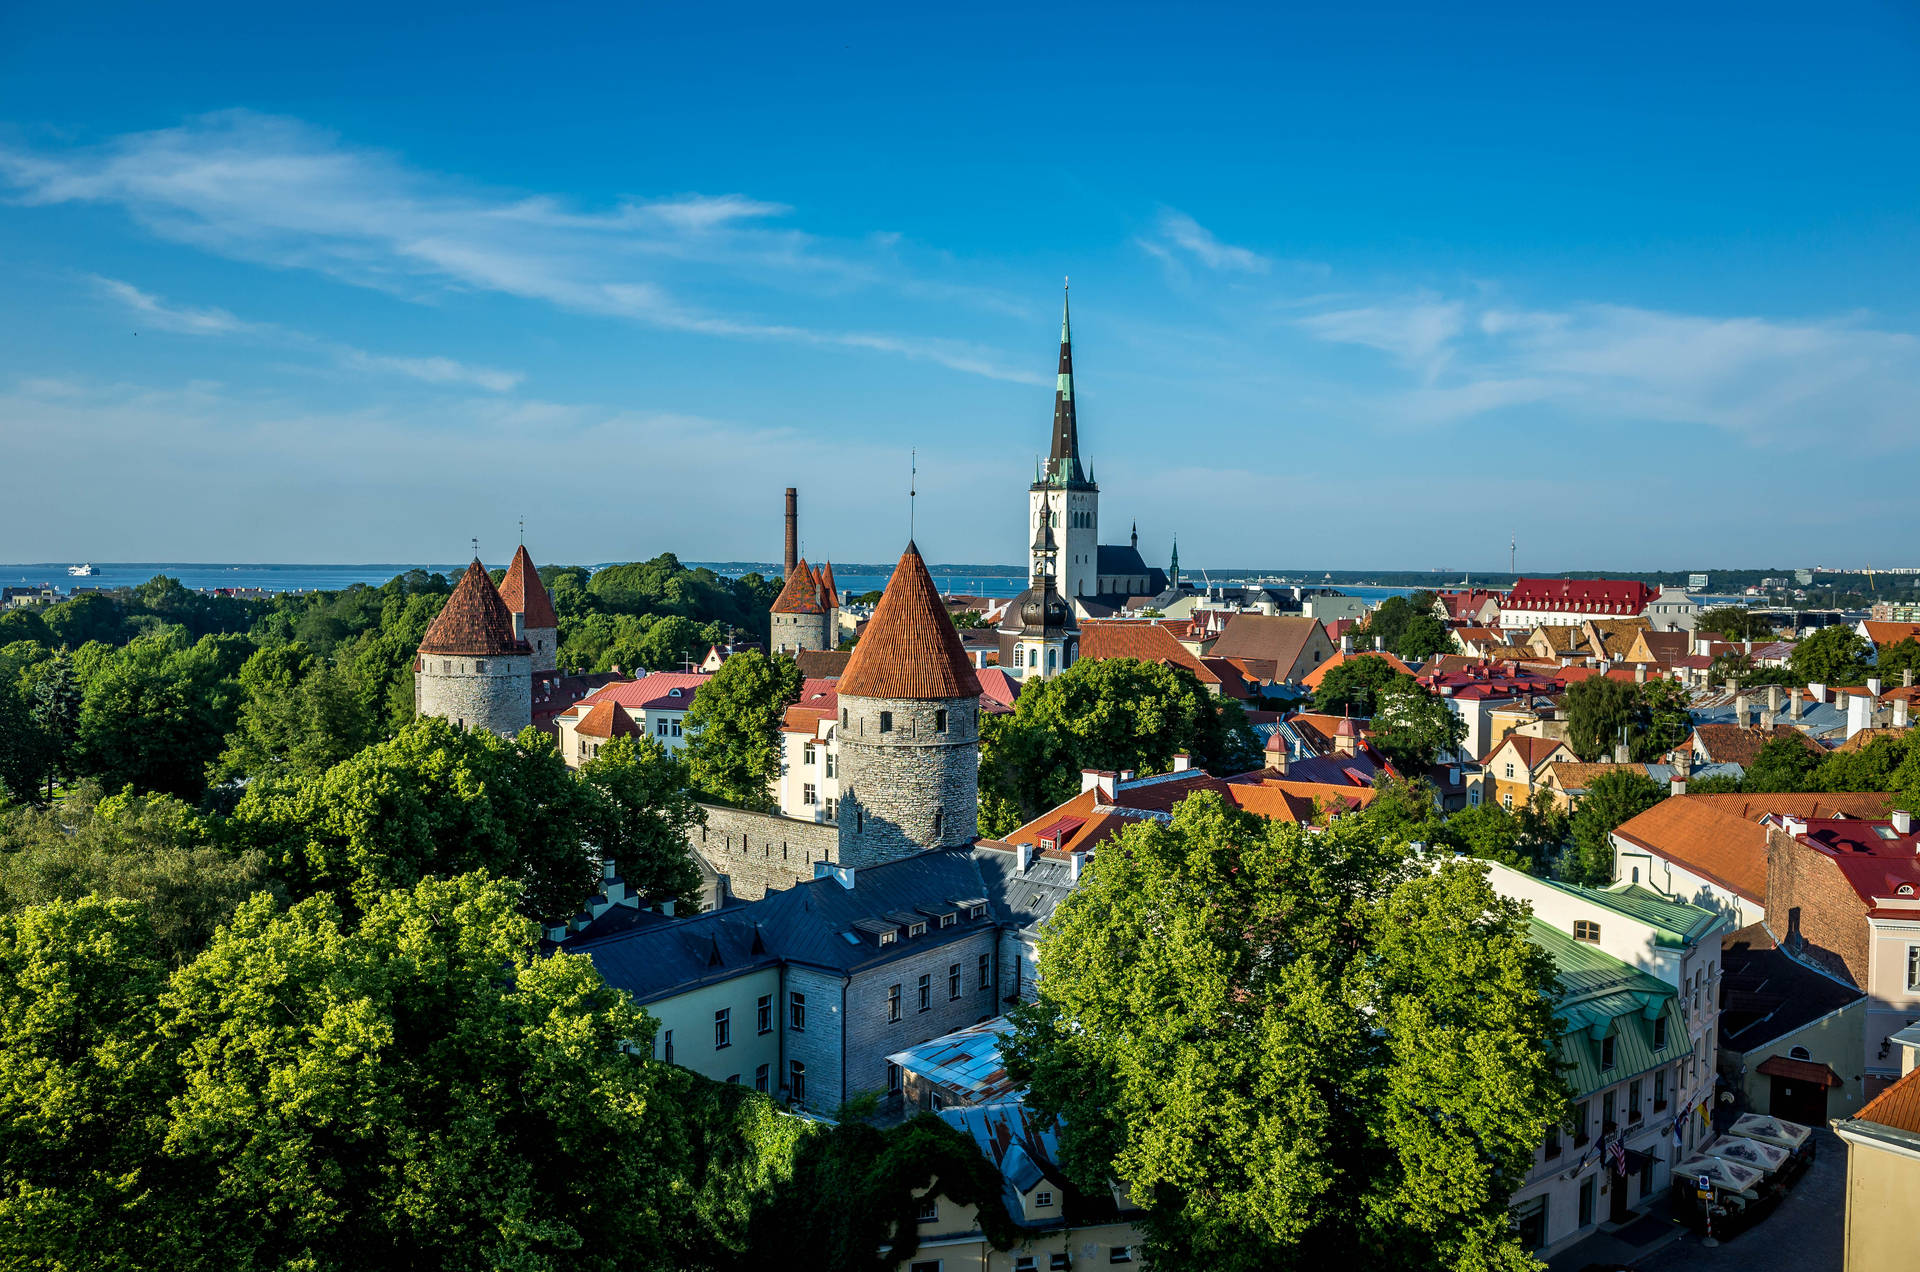 Estonia City Of Tallinn Wallpaper